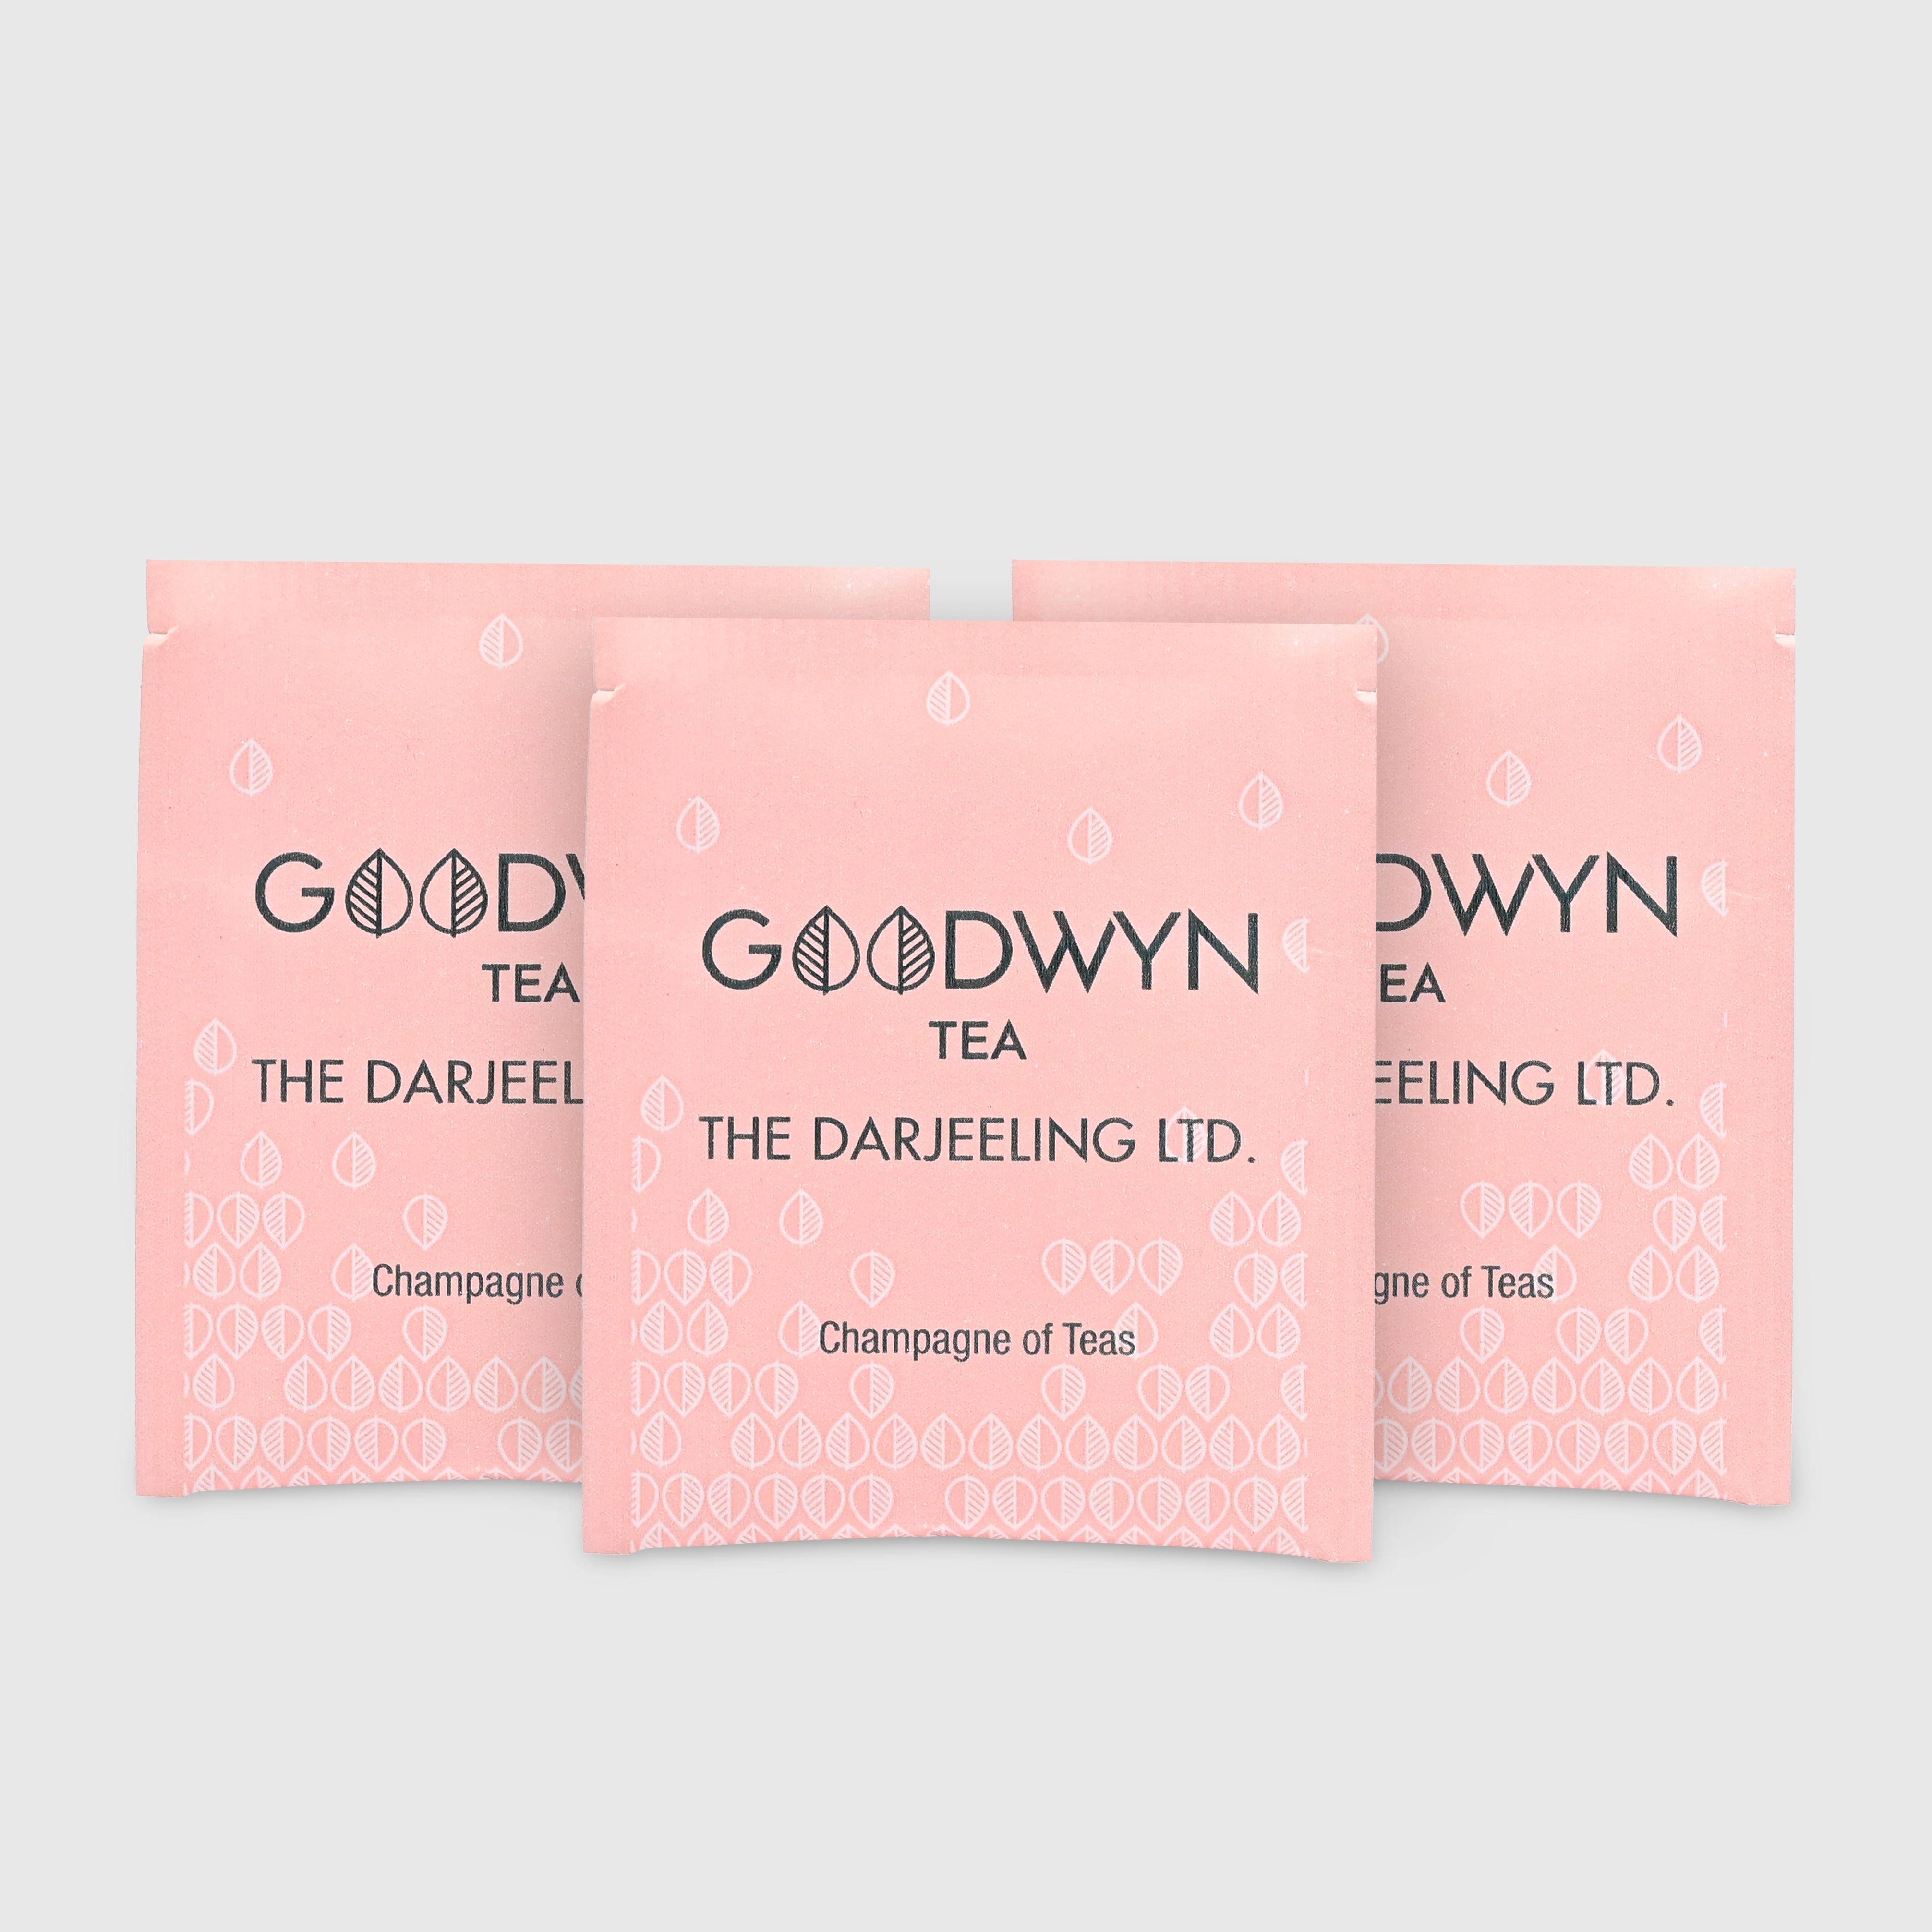 Goodwyn Darjeeling Tea Enveloped Tea Bags 100s